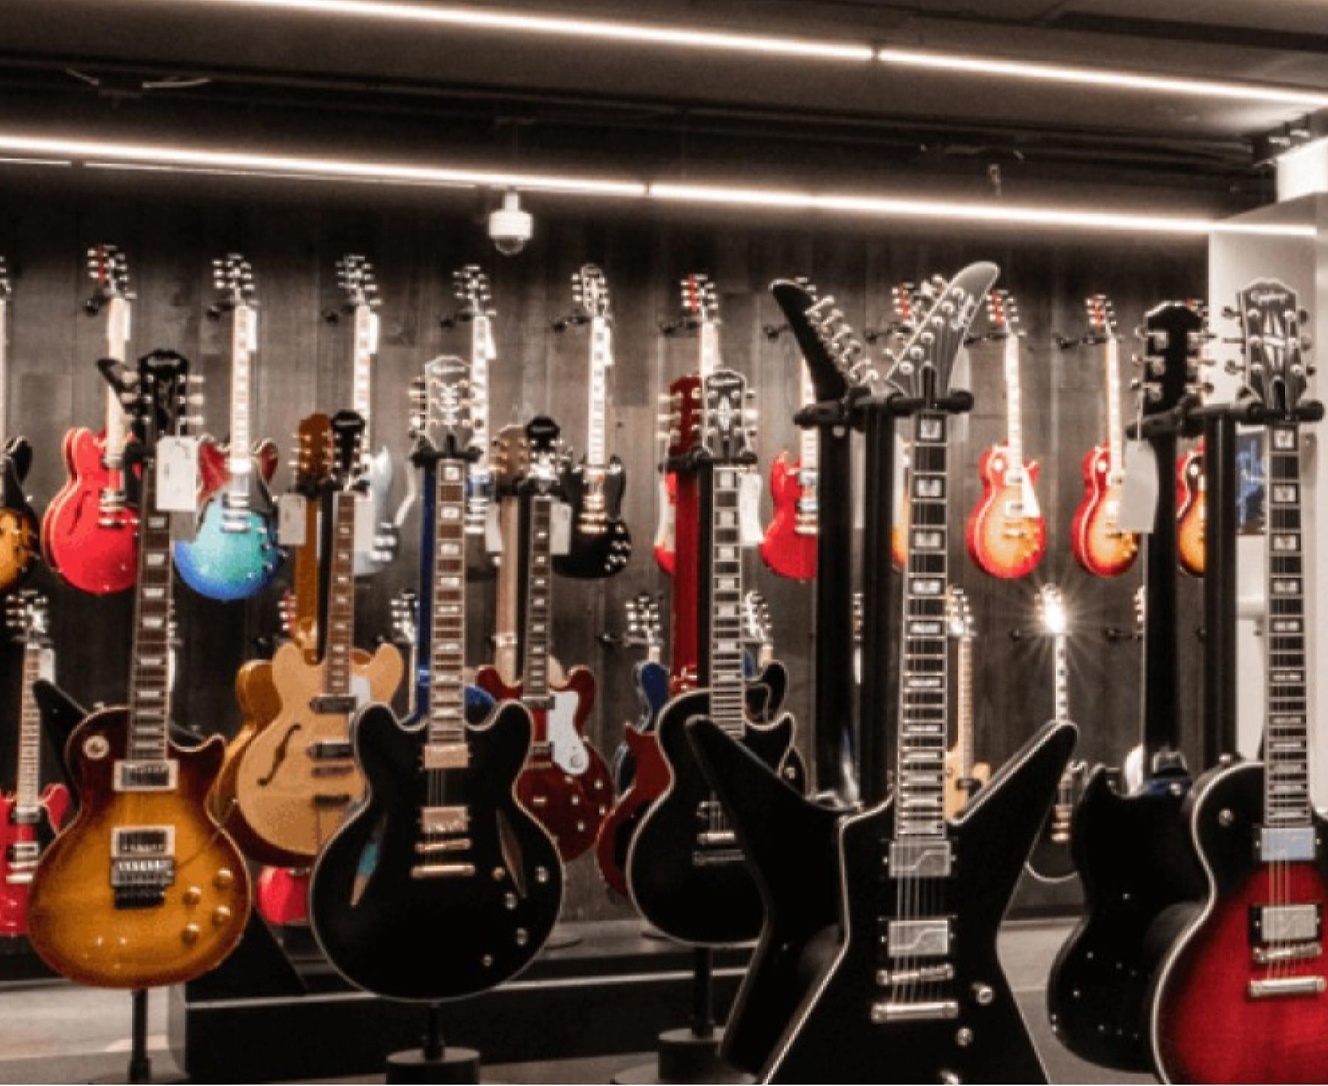 De nombreuses guitares sont exposées dans un magasin.